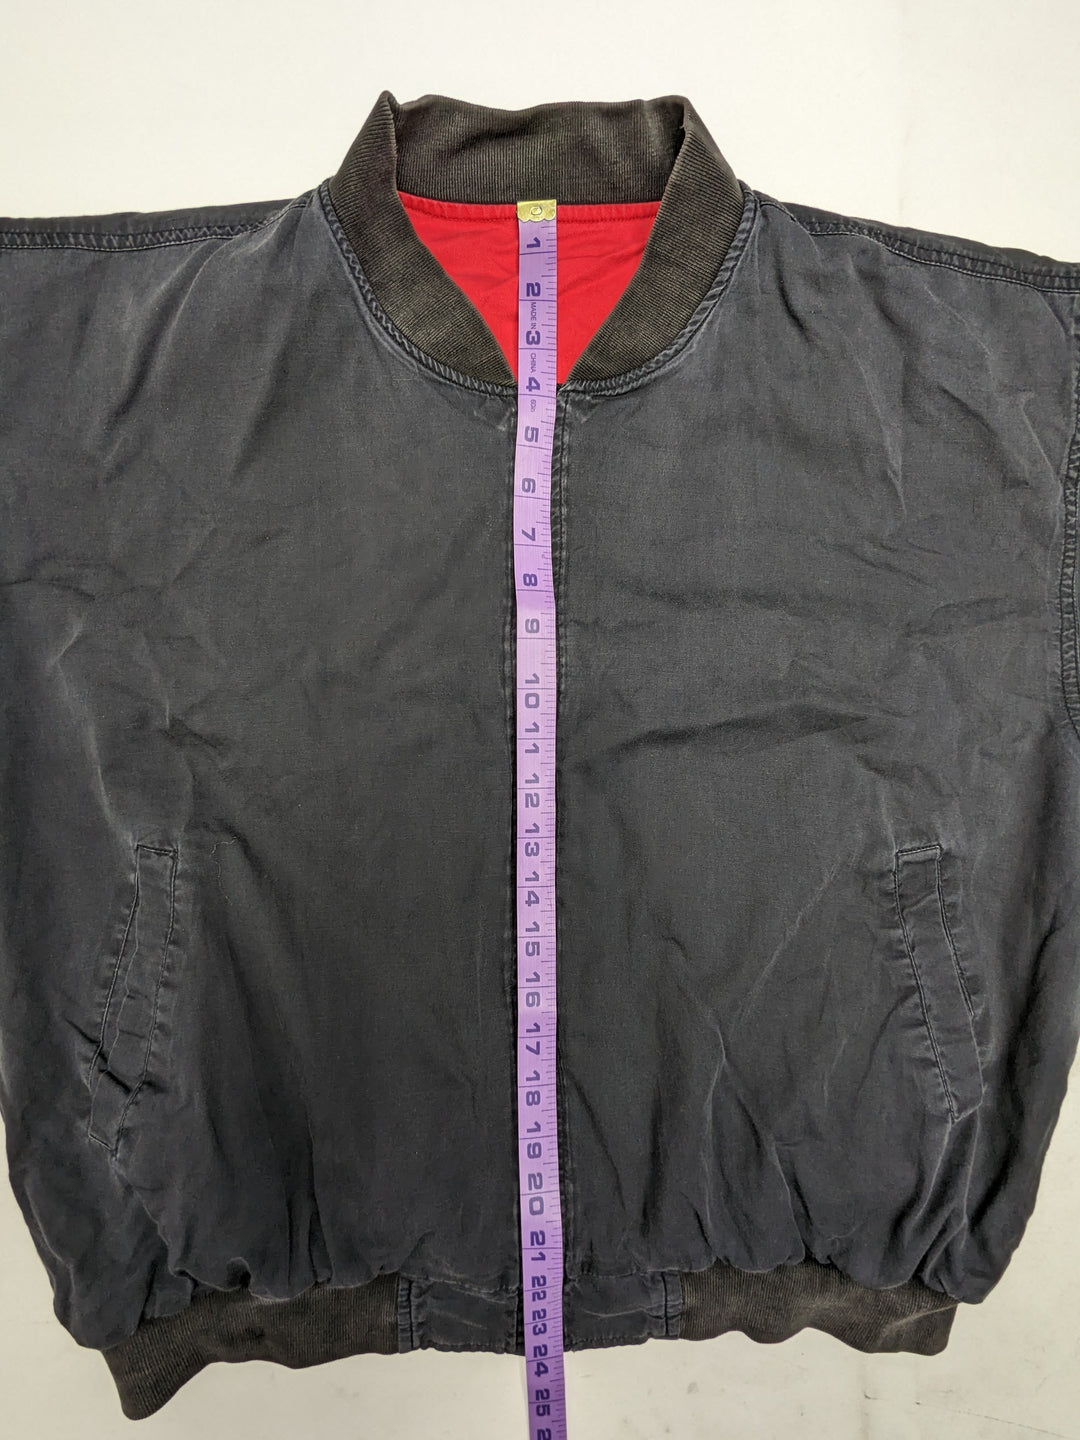 Marlboro Reversible Jacket 1 pc 1 lb E0122218-05 - Raghouse